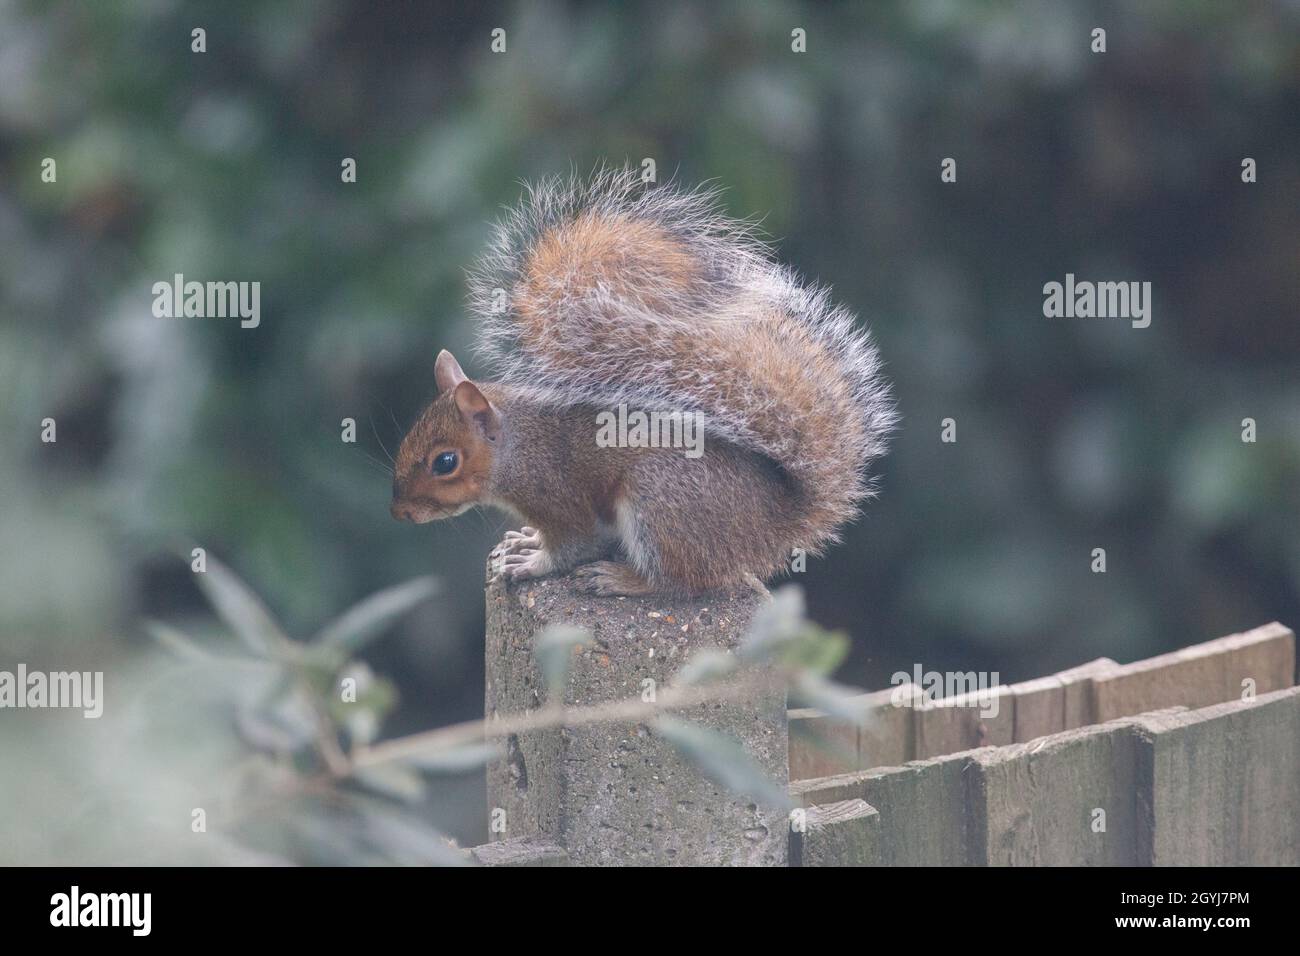 Clima del Reino Unido, 8 de octubre de 2021: Como el clima otoñal toma un giro inusualmente suave, una ardilla posa en una valla del jardín en Clapham, al sur de Londres. Anna Watson/Alamy Live News Foto de stock